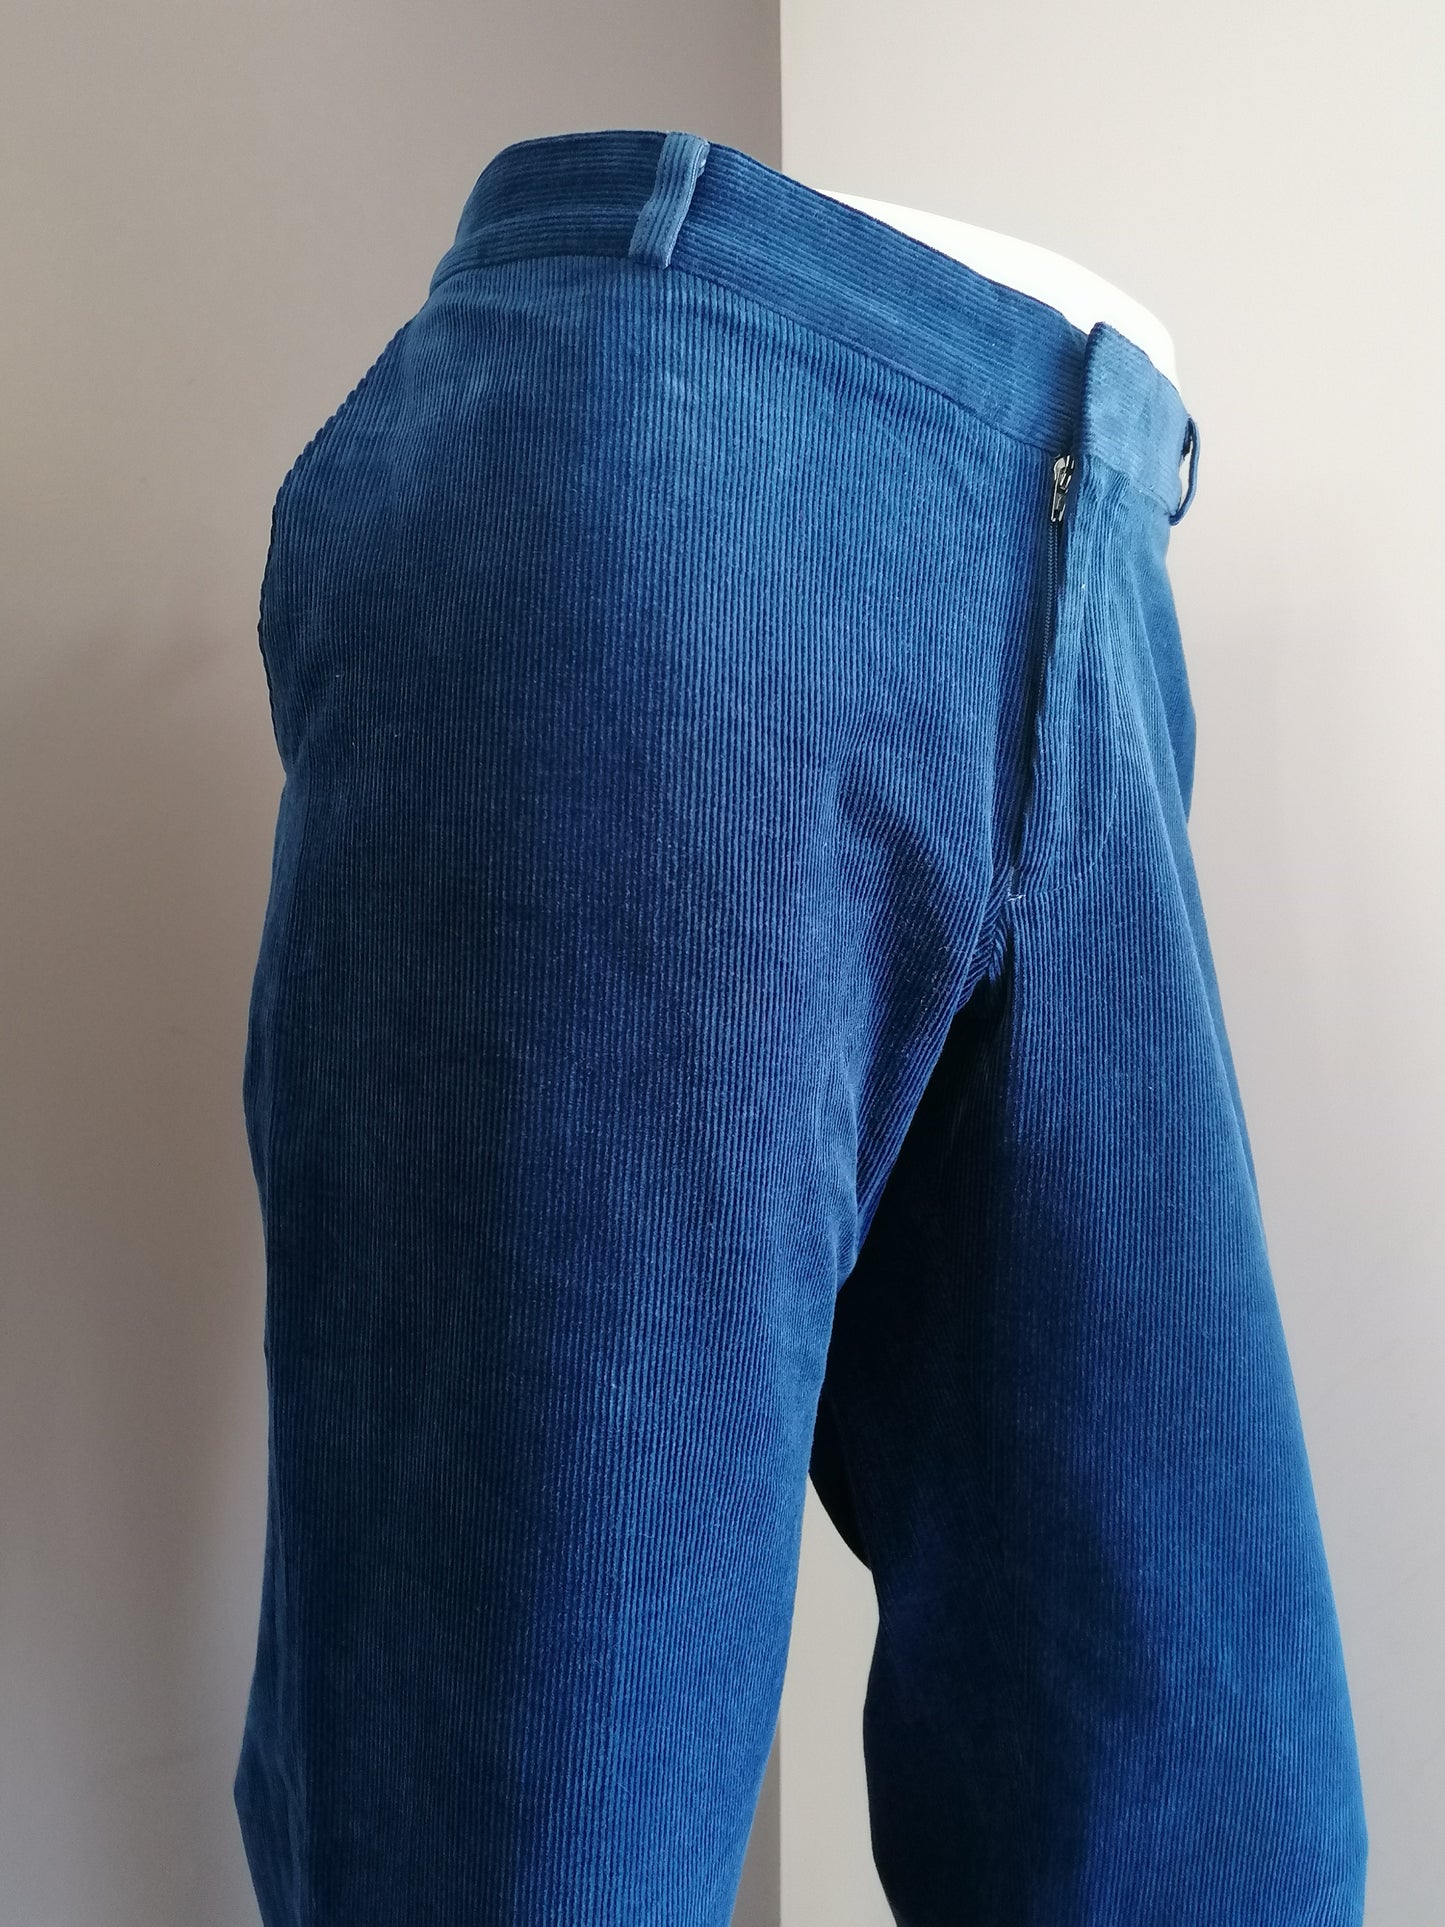 Comfort Stretch Rib broek / pantalon. Blauw gekleurd. Maat 27 (54/L)